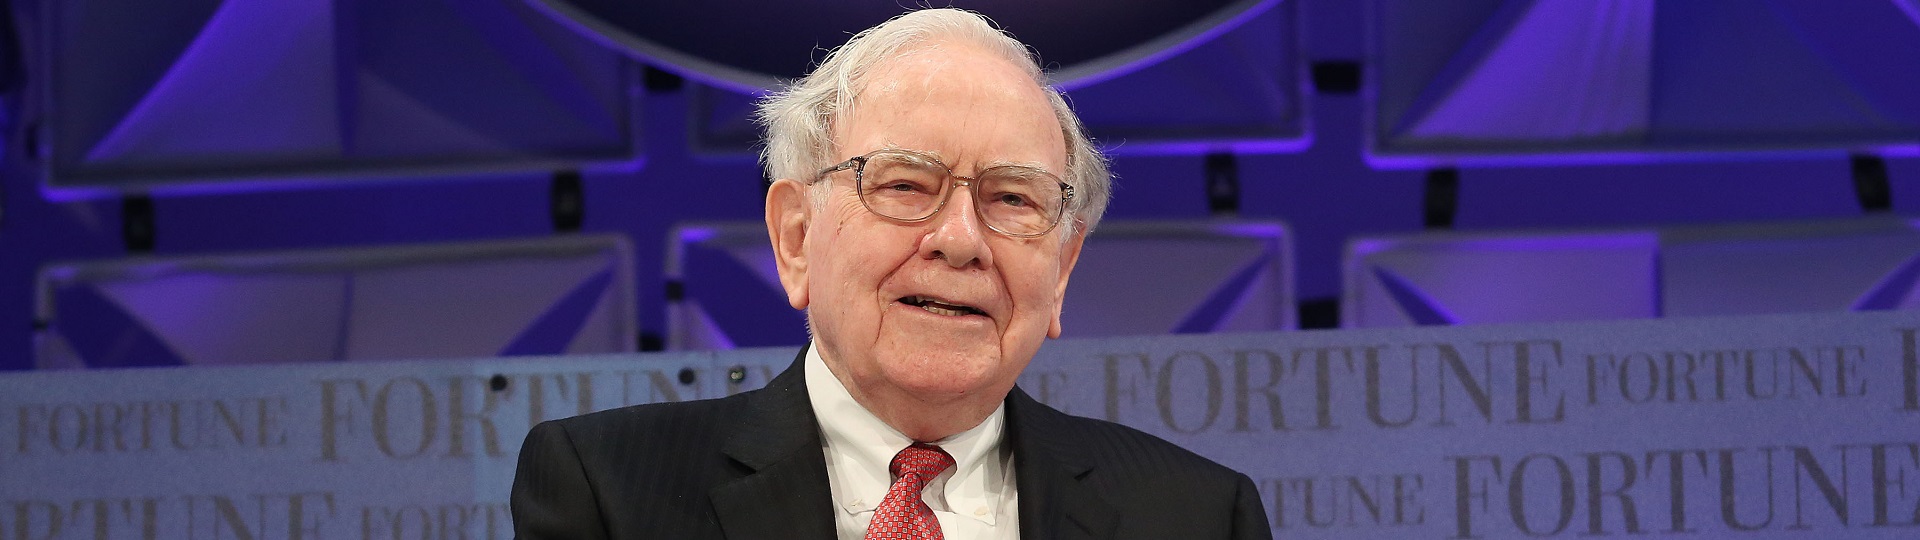 Investiční výhled Warrena Buffetta